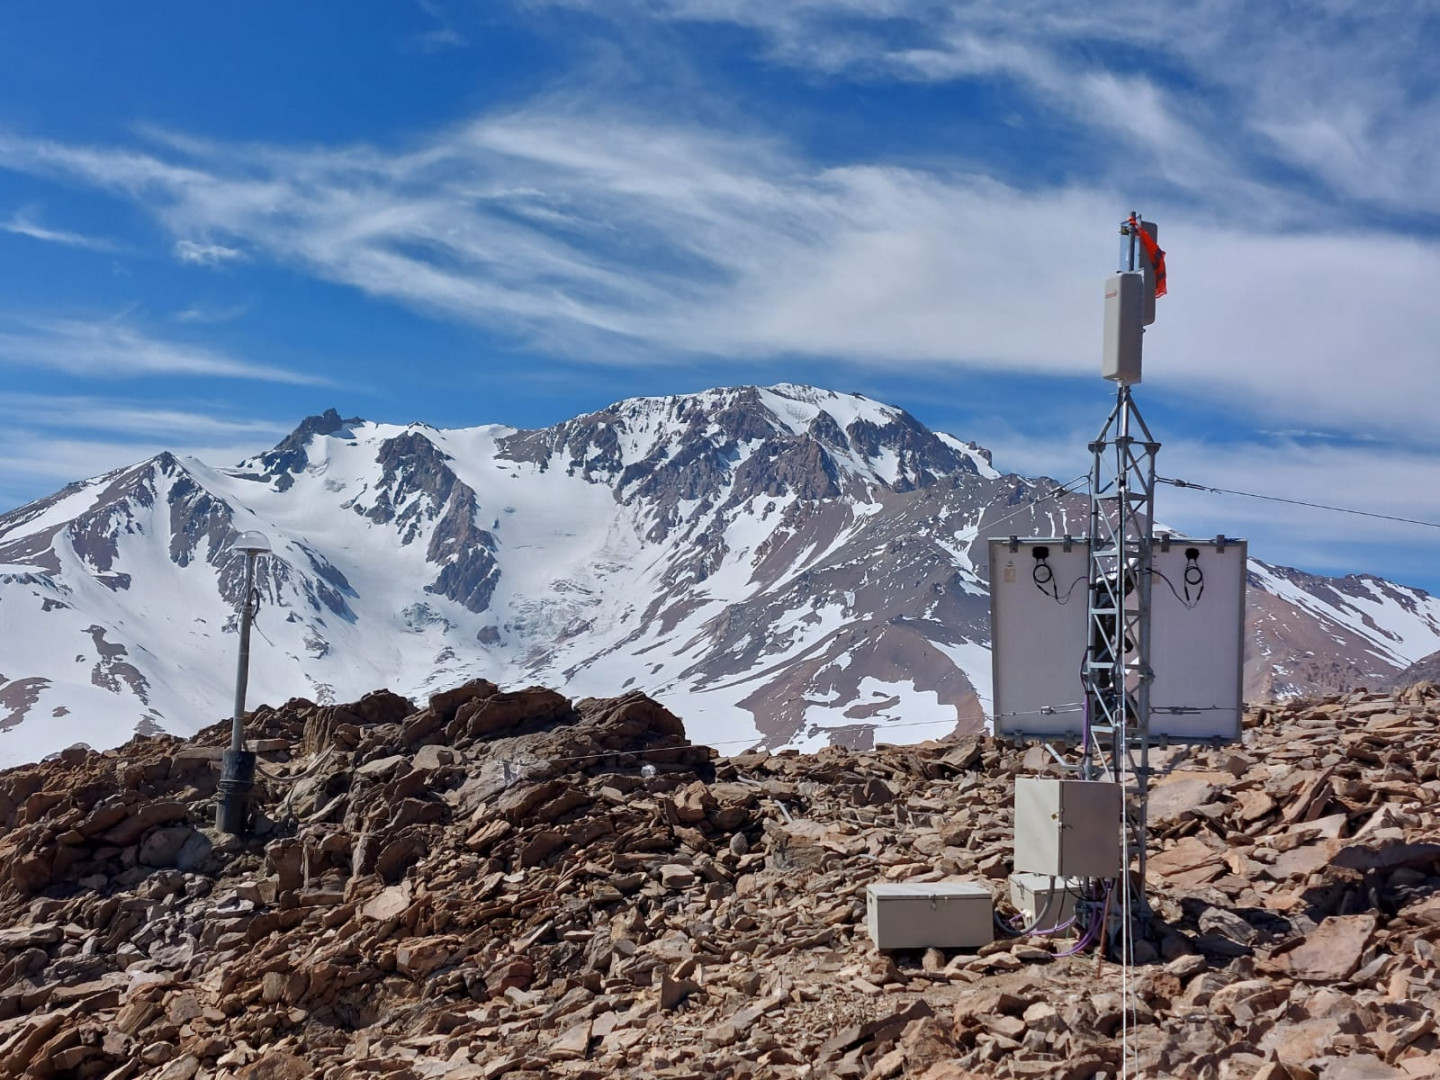 La estación multiparamétrica Ailinco (AIL), ubicada al sur del Cerro Domuyo, se encuentra emplazada a 3.456 msnm y es la estación sismológica de mayor altitud en el país. Incluye además un sensor GNSS para medir la deformación.